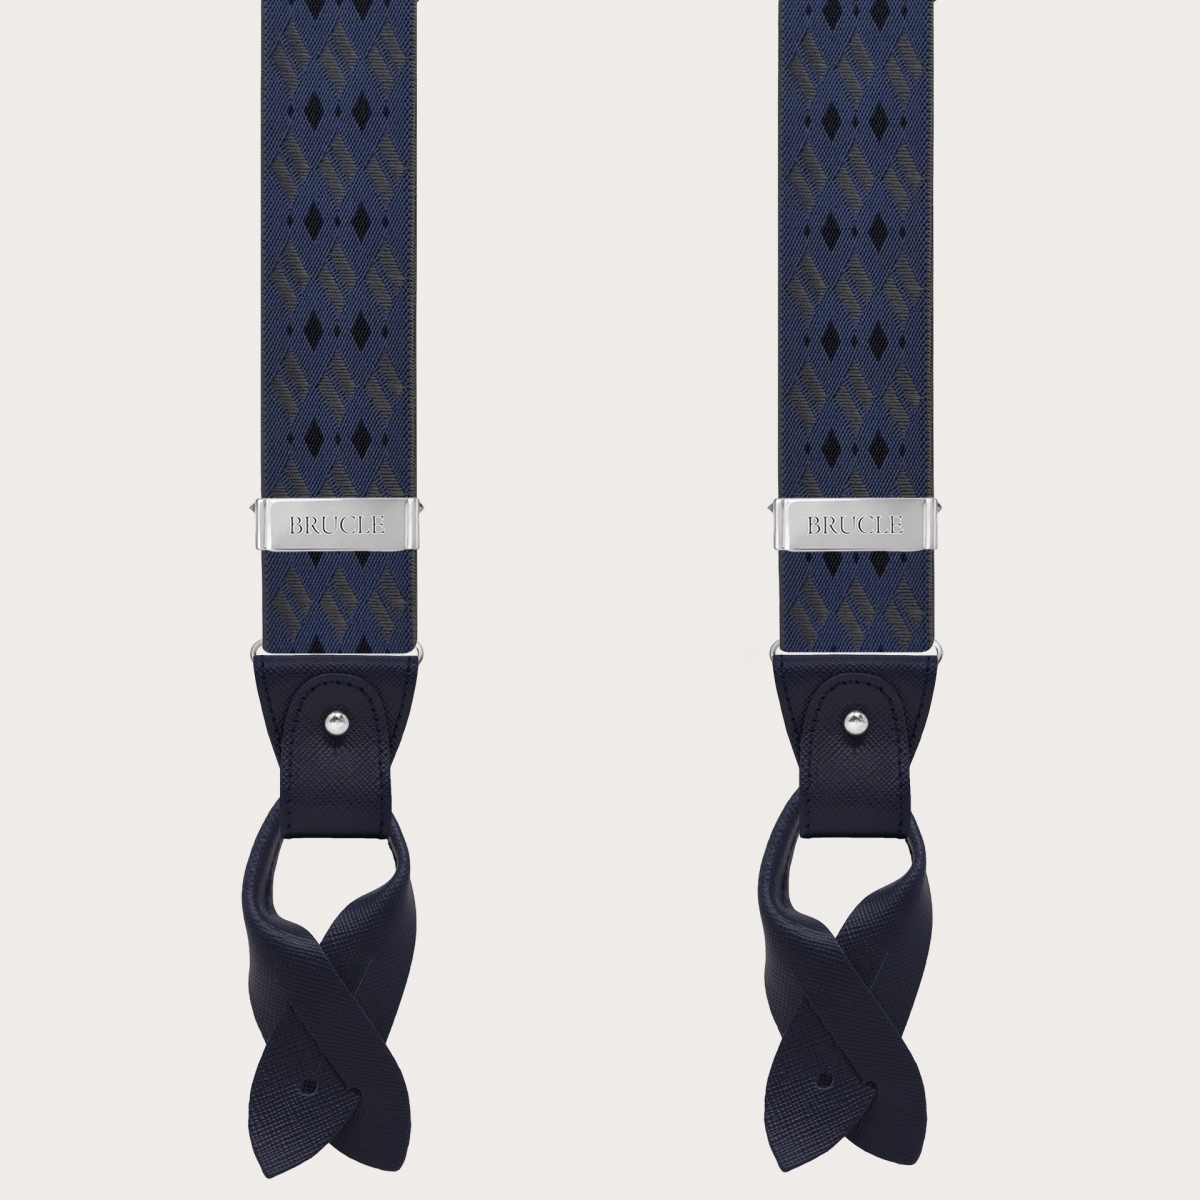 Blaue und graue Hosenträger mit Rautenmuster für Knöpfe oder nickelfreie Clips